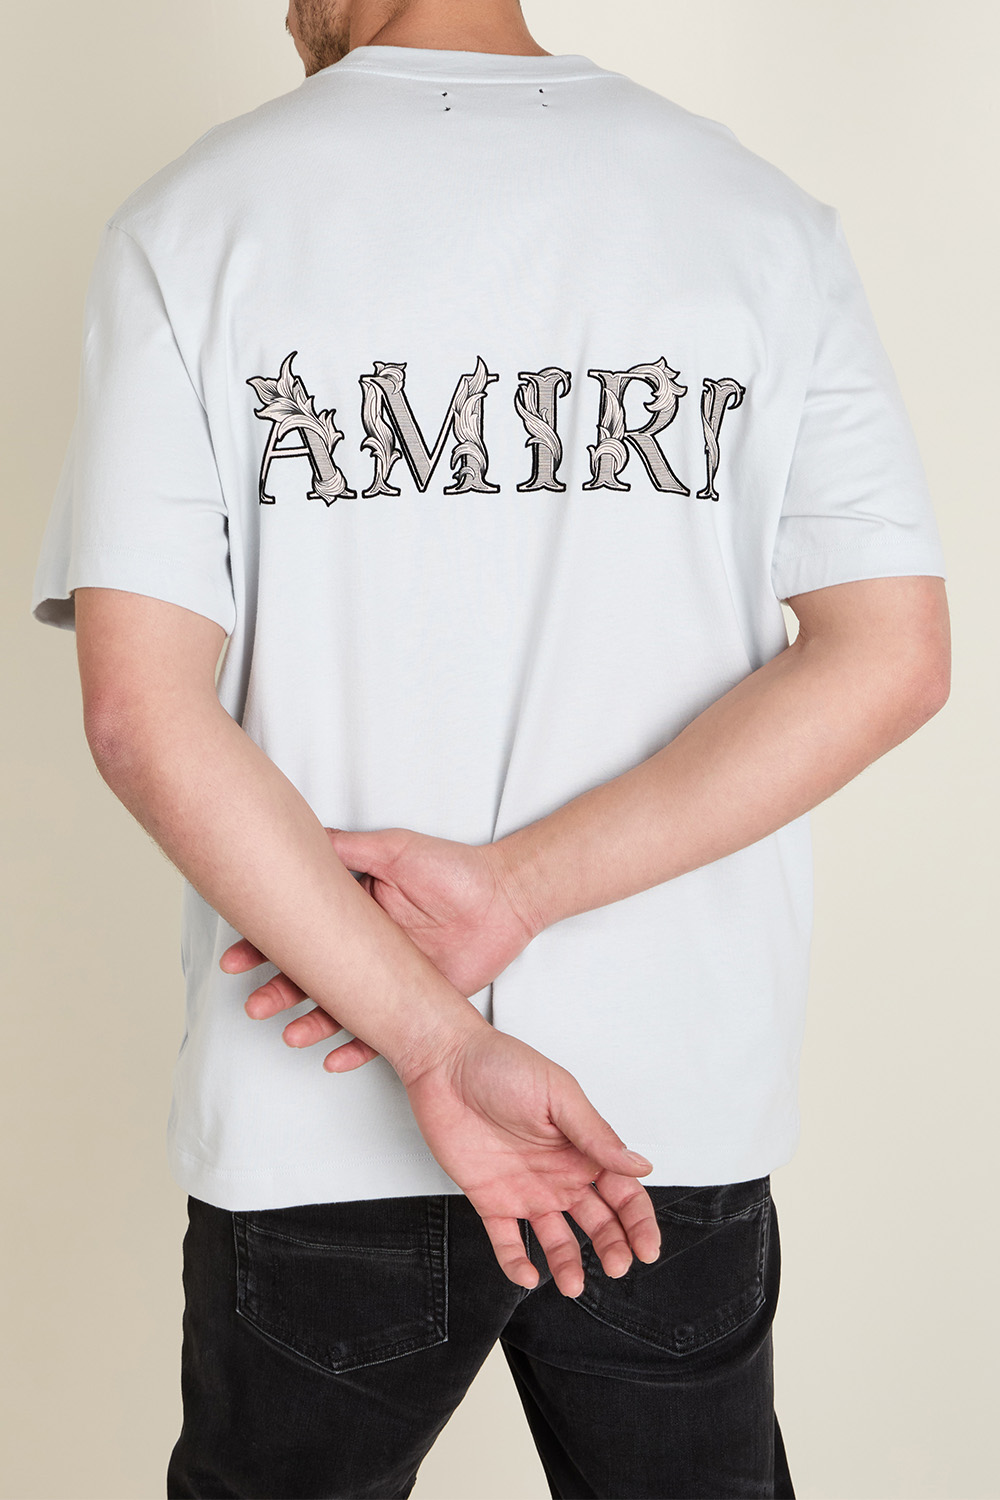 חולצת טי AMIRI